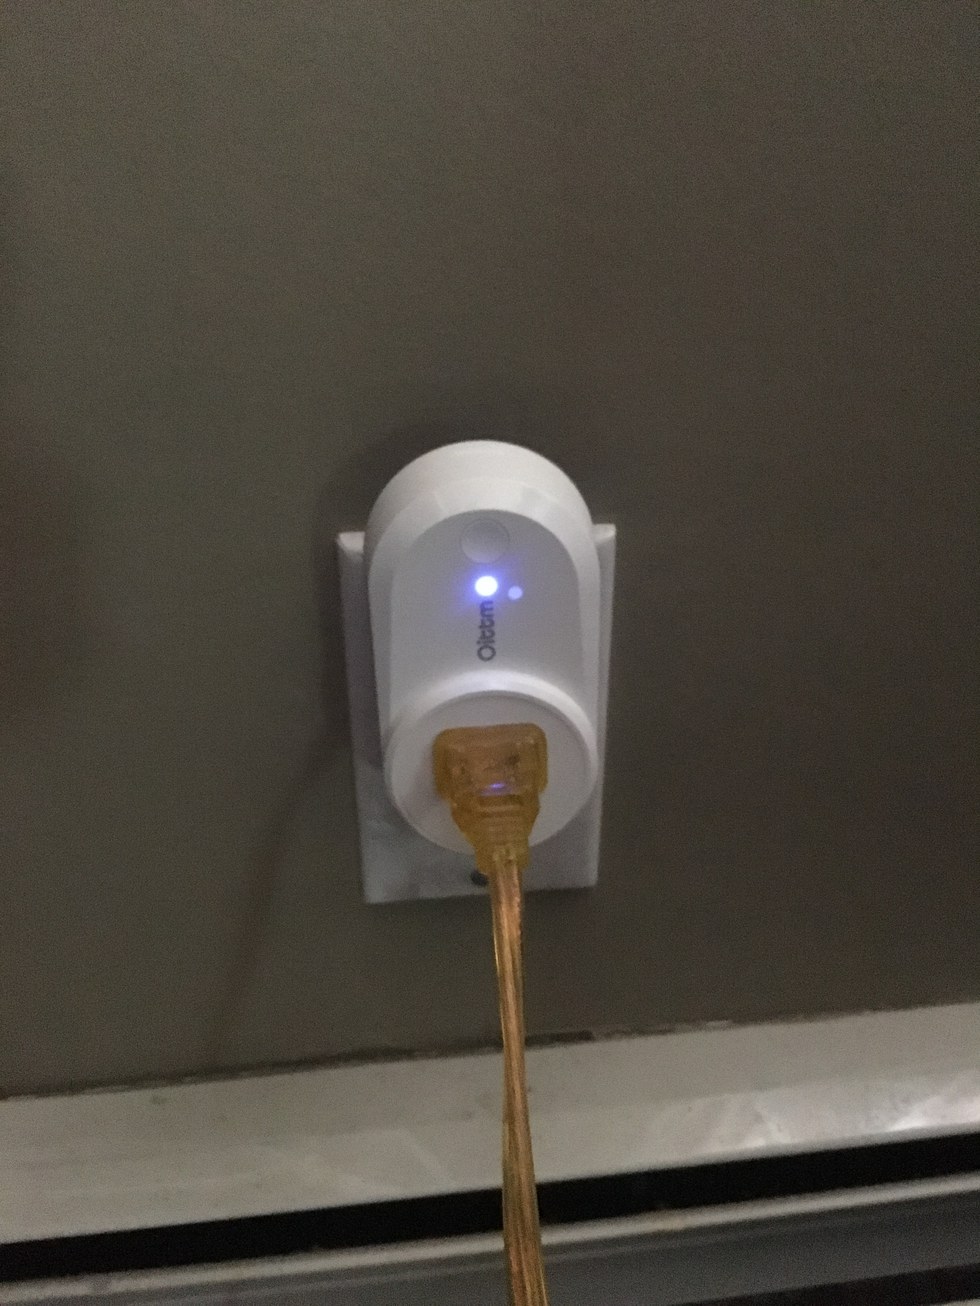 Oittm Wi-Fi Smart Plug